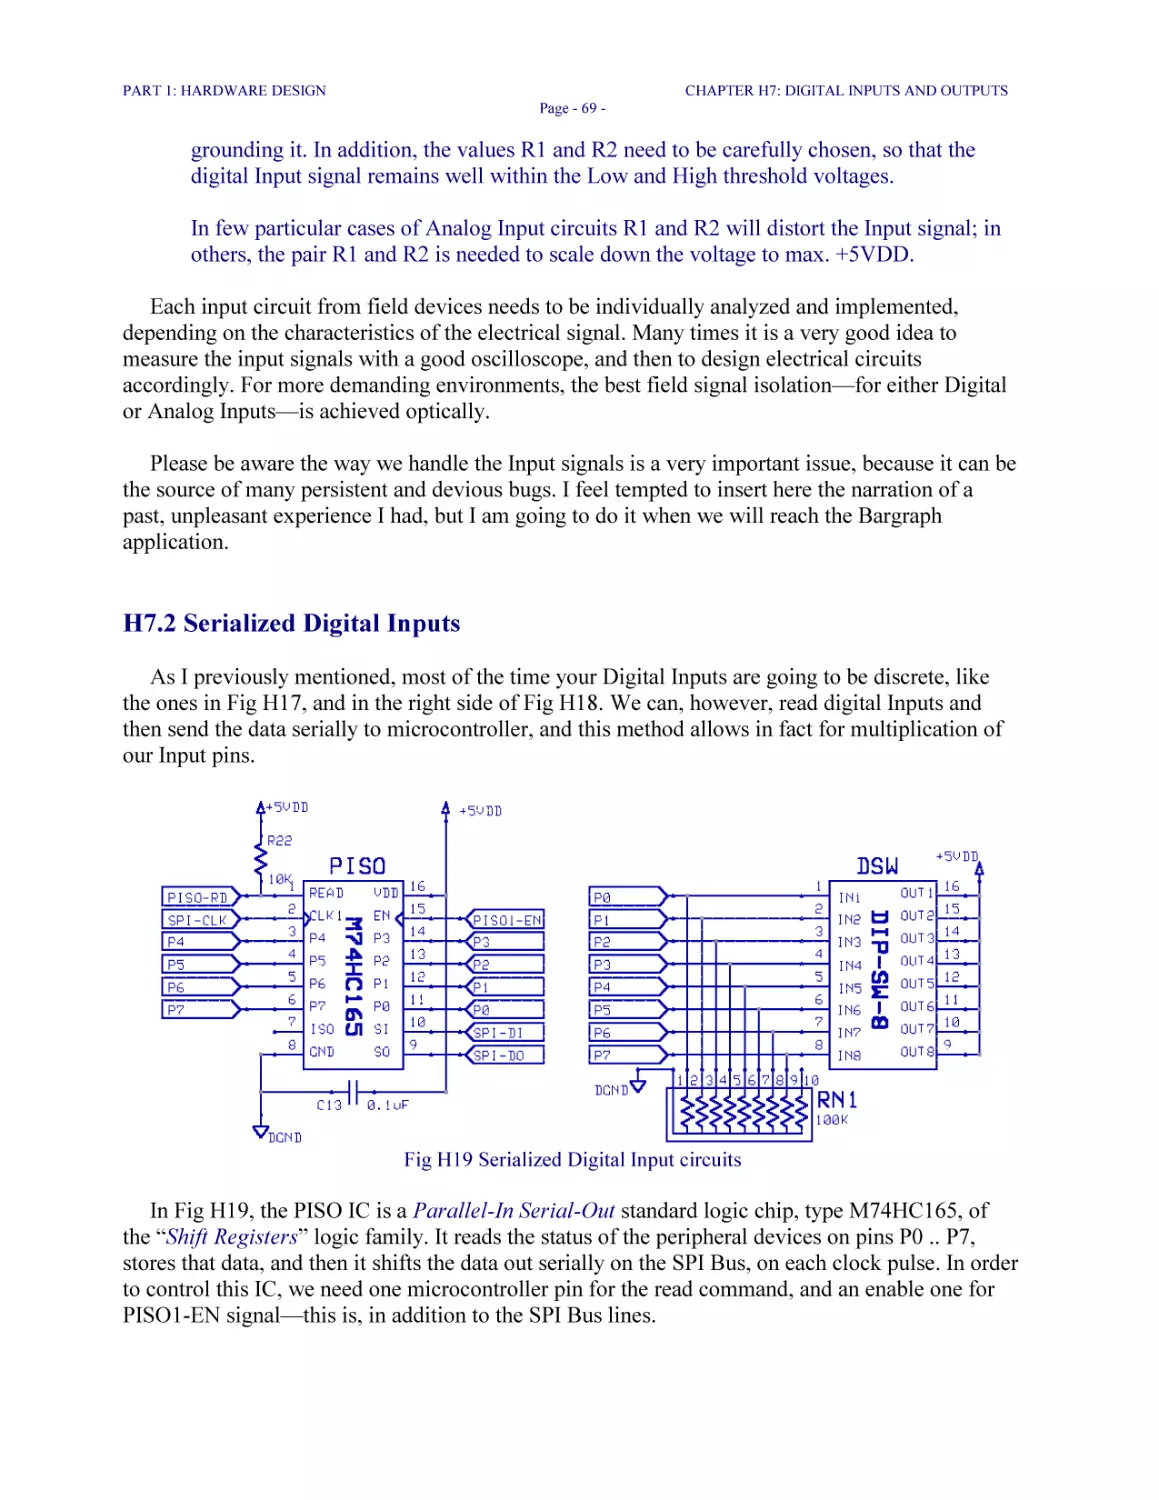 H7.2 Serialized Digital Inputs